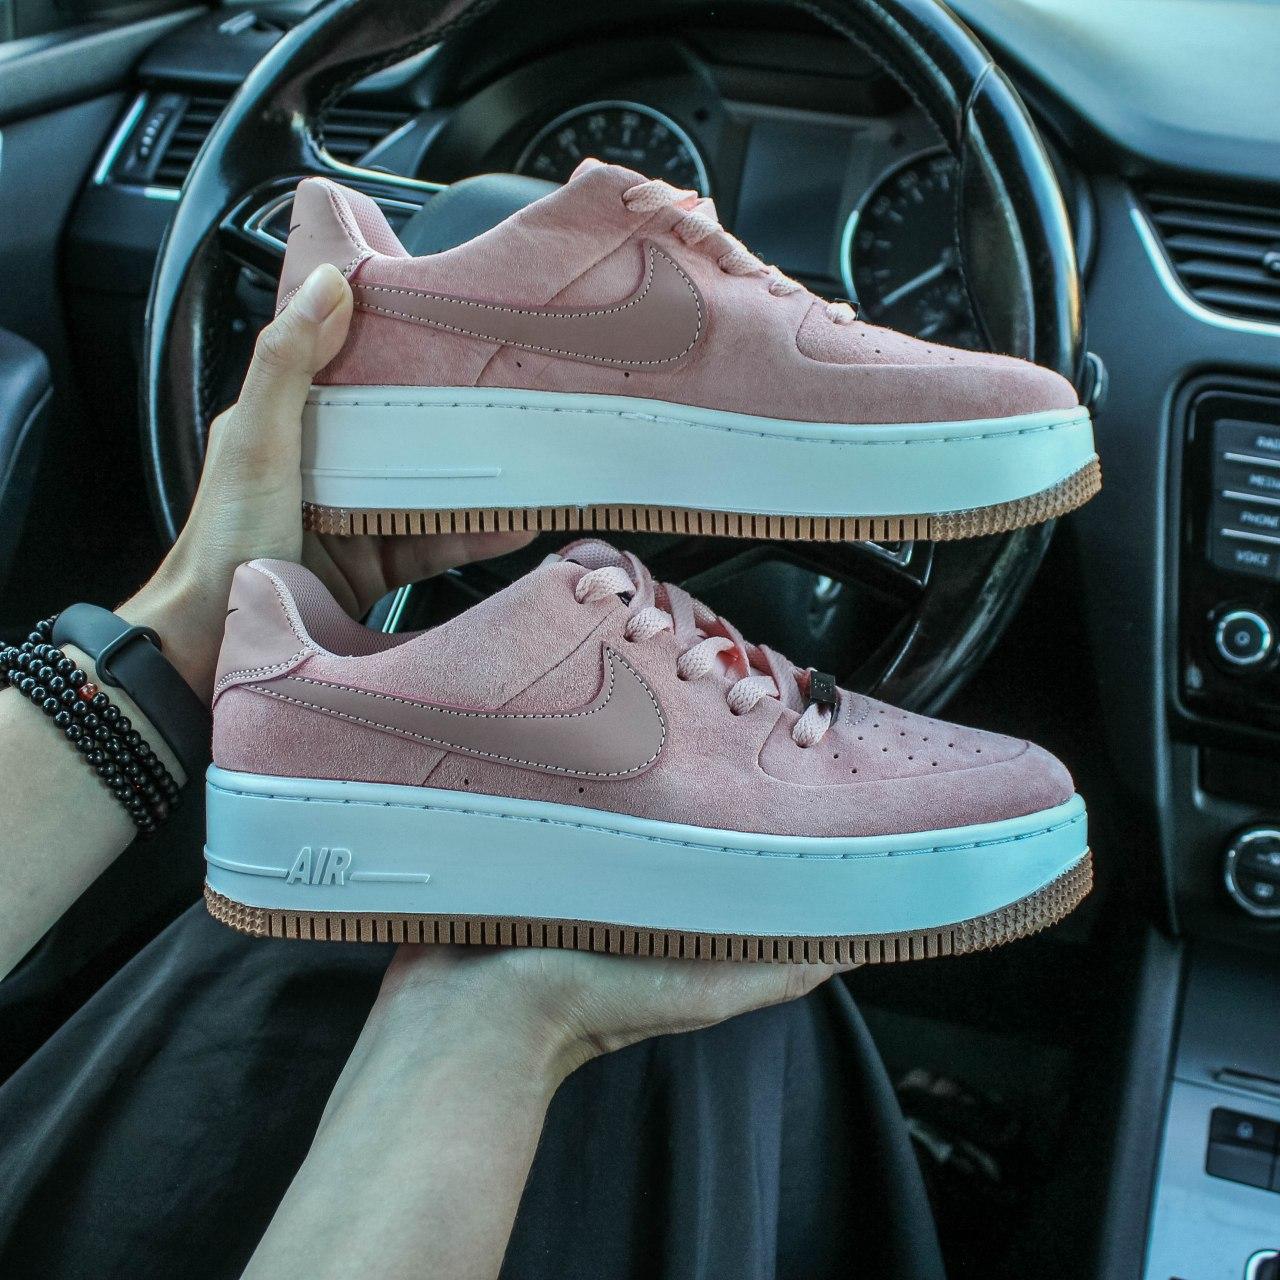 Жіночі кросівки Nike Air Force Sage Pink | Найк Аір Форс Саге Розові